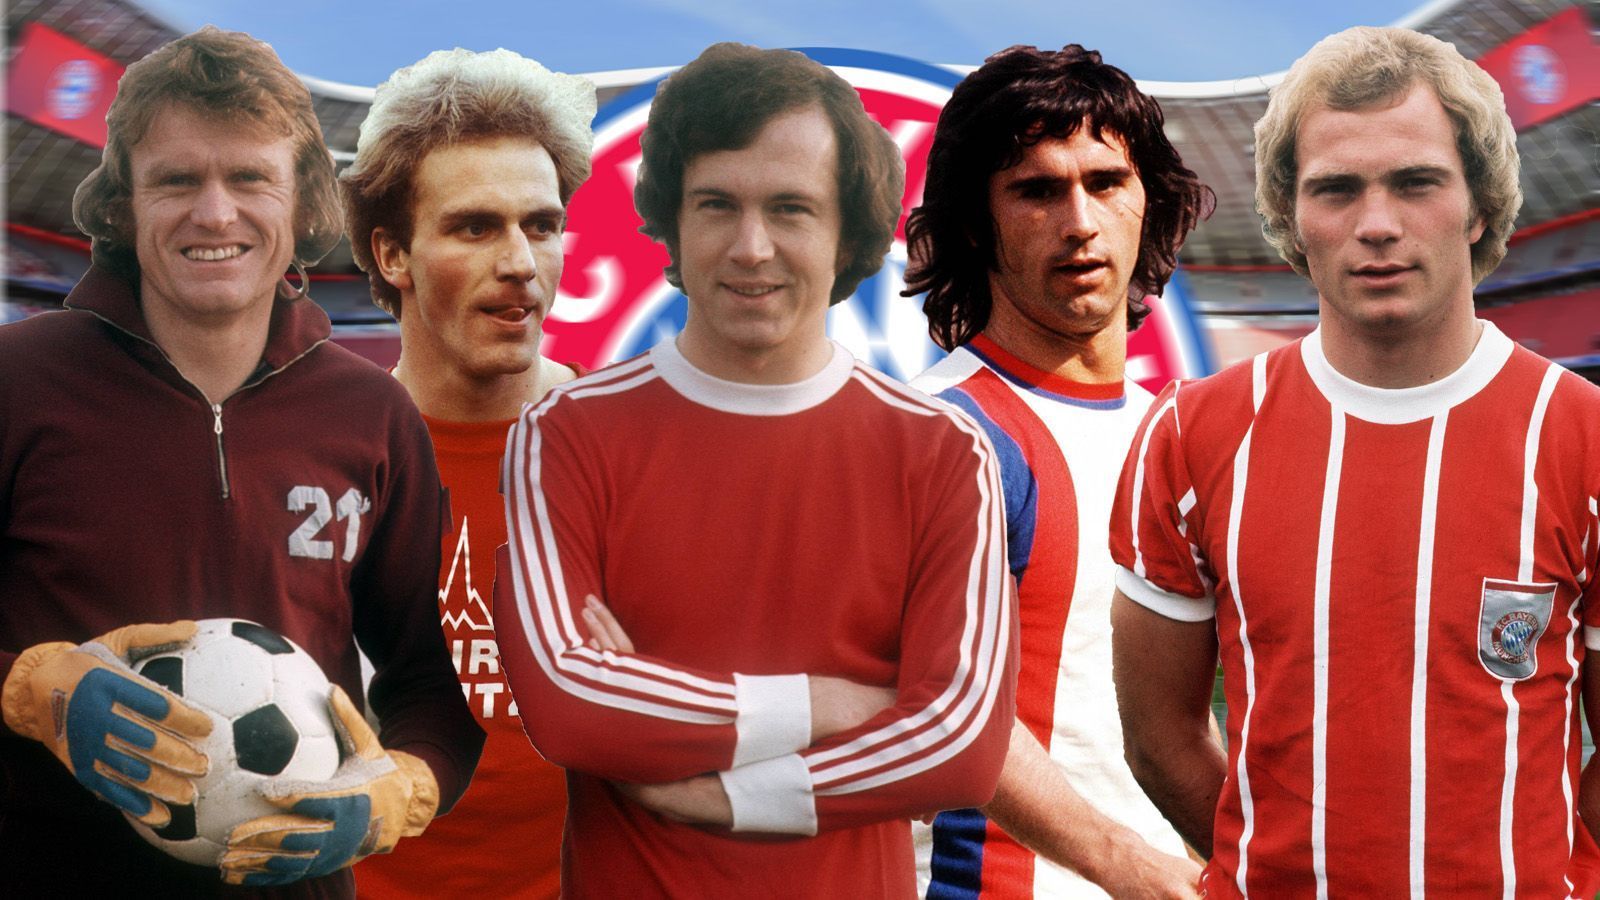 
                <strong>Was die Bayern-Legenden heute wert wären </strong><br>
                Die Summen auf dem Transfermarkt sind in den vergangenen Jahren in schwindelerregende Höhen gestiegen, die 100-Millionen-Euro-Marke für Transfers wurde inzwischen mehrfach gebrochen. Doch was wären die Bayern-Legenden früherer Tage, etwa Gerd Müller, Franz Beckenbauer oder Oliver Kahn in der heutigen Zeit wert? Das FC Bayern-Fanmagazin "51" hat zusammen mit der Fußball-Datenbank "Transfermarkt.de" simuliert, welchen Marktwert die Bayern-Idole der Vergangenheit im Jahr 2019 vorweisen könnten. Als Indikator diente jeweils eine Spielzeit der Legenden, die von der Datenbank bewertet und auf das Jahr 2019 berechnet wurde. ran.de zeigt die elf teuersten Bayern-Legenden, deren Marktwert-Berechnung mindestens zehn Jahre zurückliegt.
              